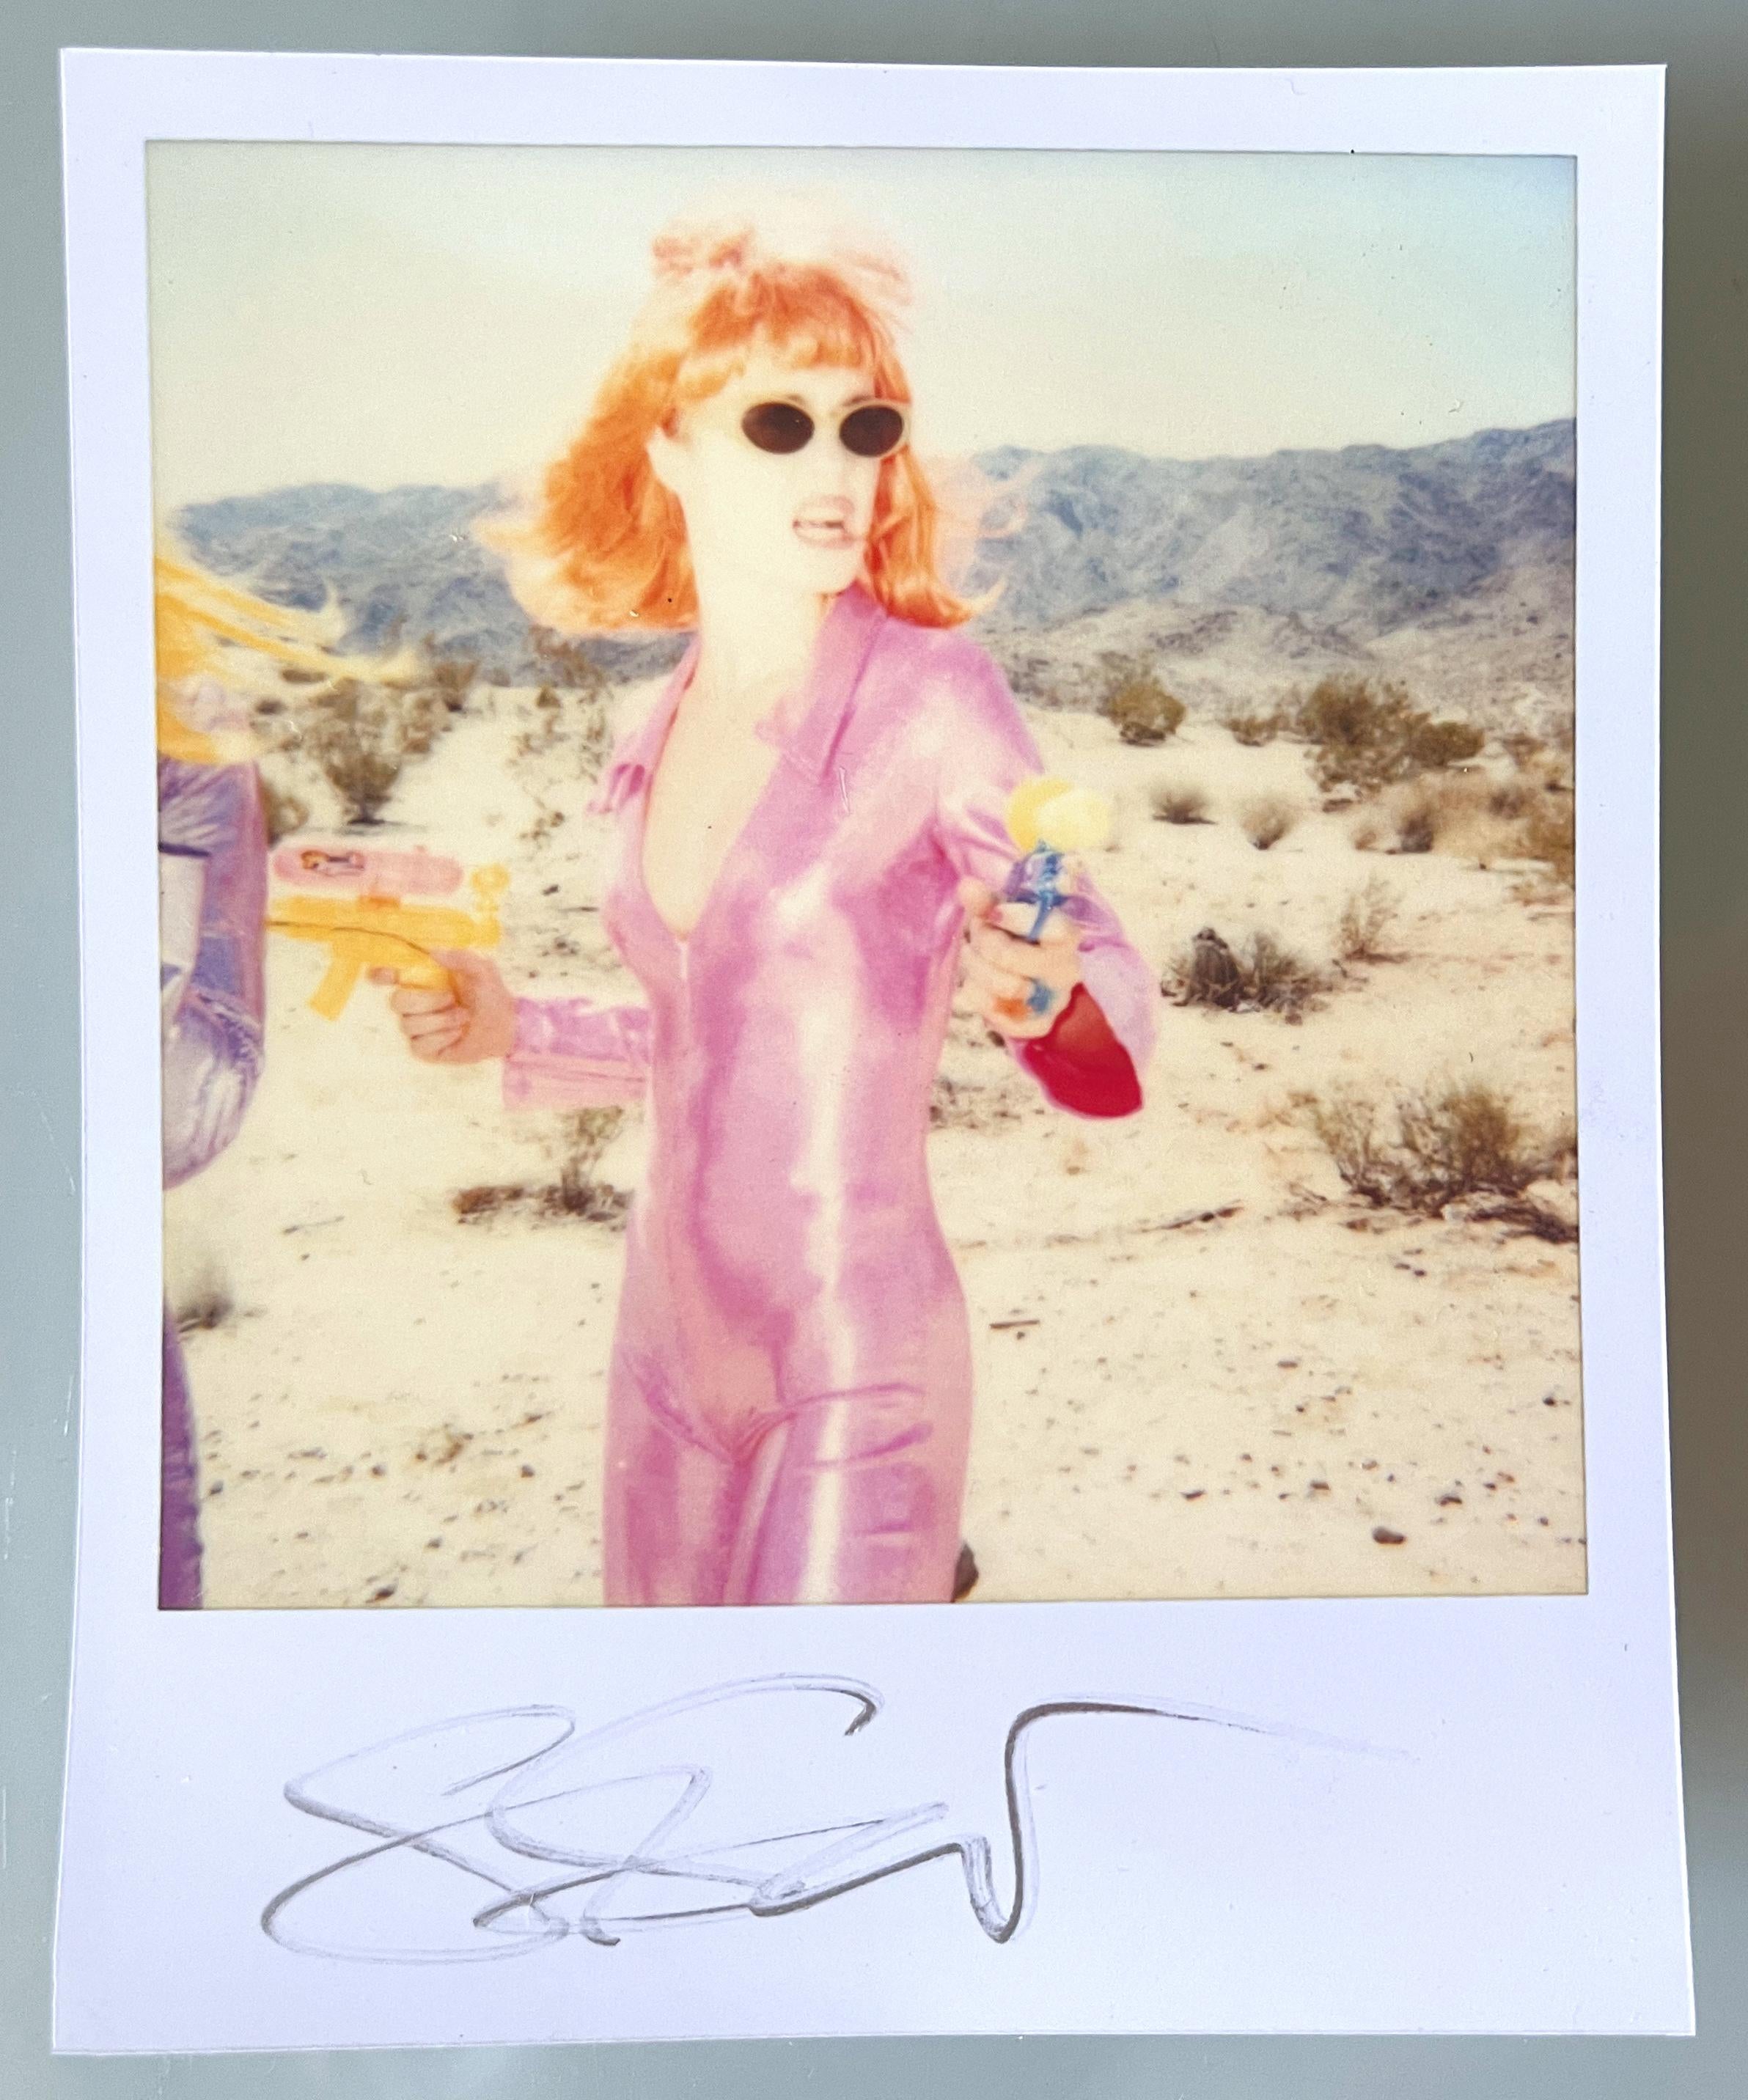 Stefanie Schneider Polaroidgröße unbegrenzt Mini 'Radha Shooting' (Long Way Home) - 1999 - 

vorne signiert, nicht montiert. 
1 Digitale Farbfotografien auf der Grundlage eines Polaroids. 

Offene Editionen in Polaroidgröße 1999-2016
10,7 x 8,8 cm